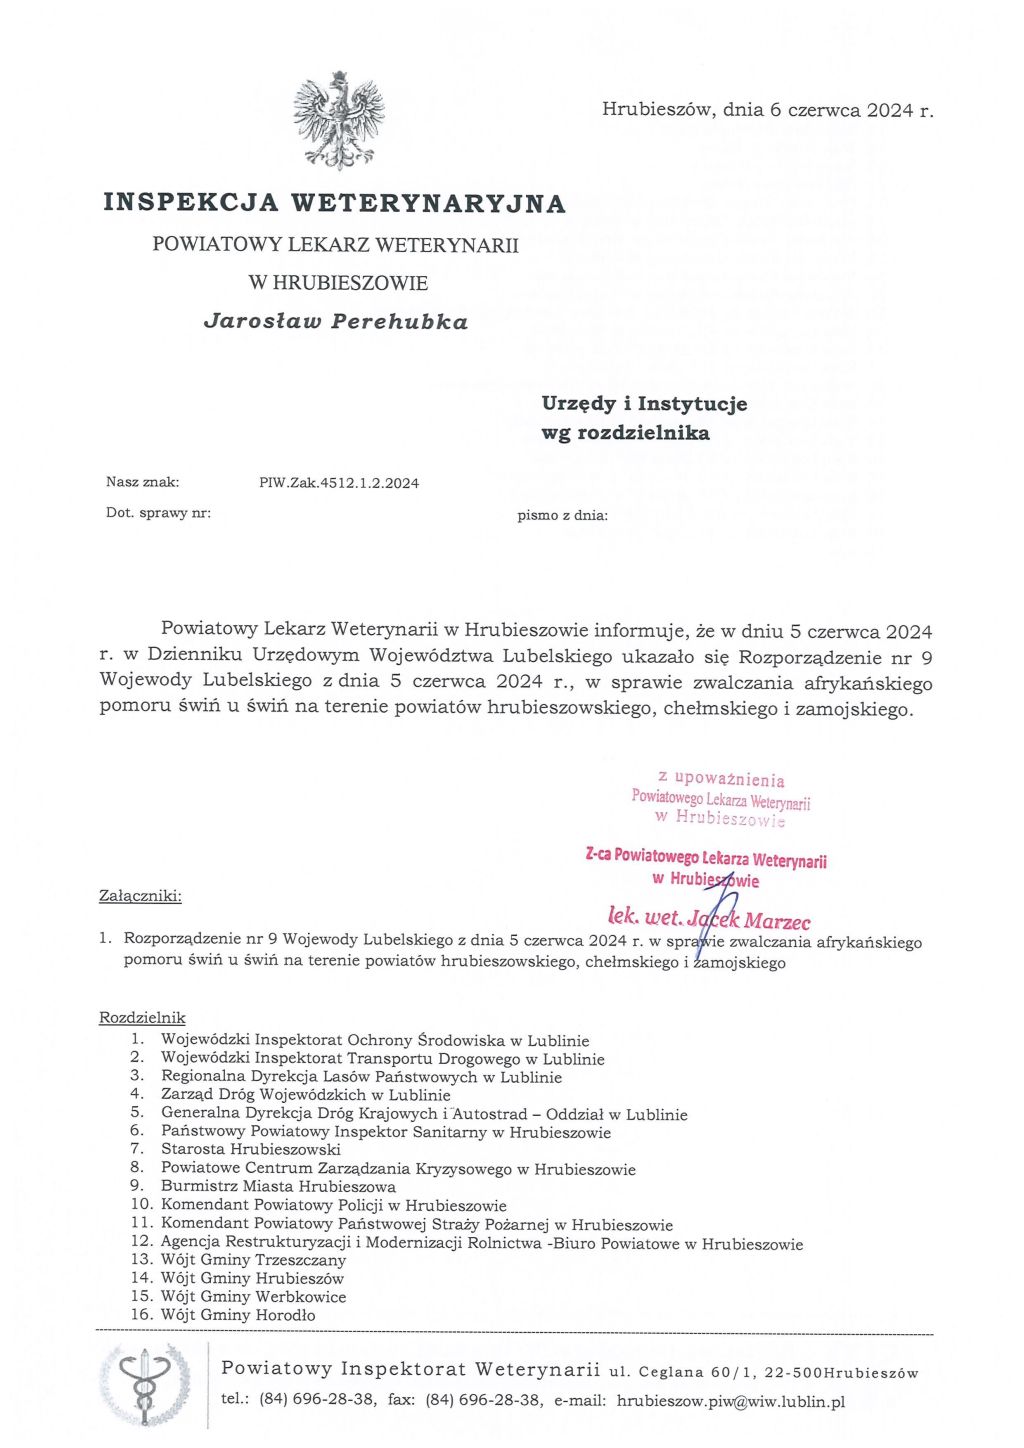 Informacja Powiatowego Lekarza Weterynarii w Hrubieszowie